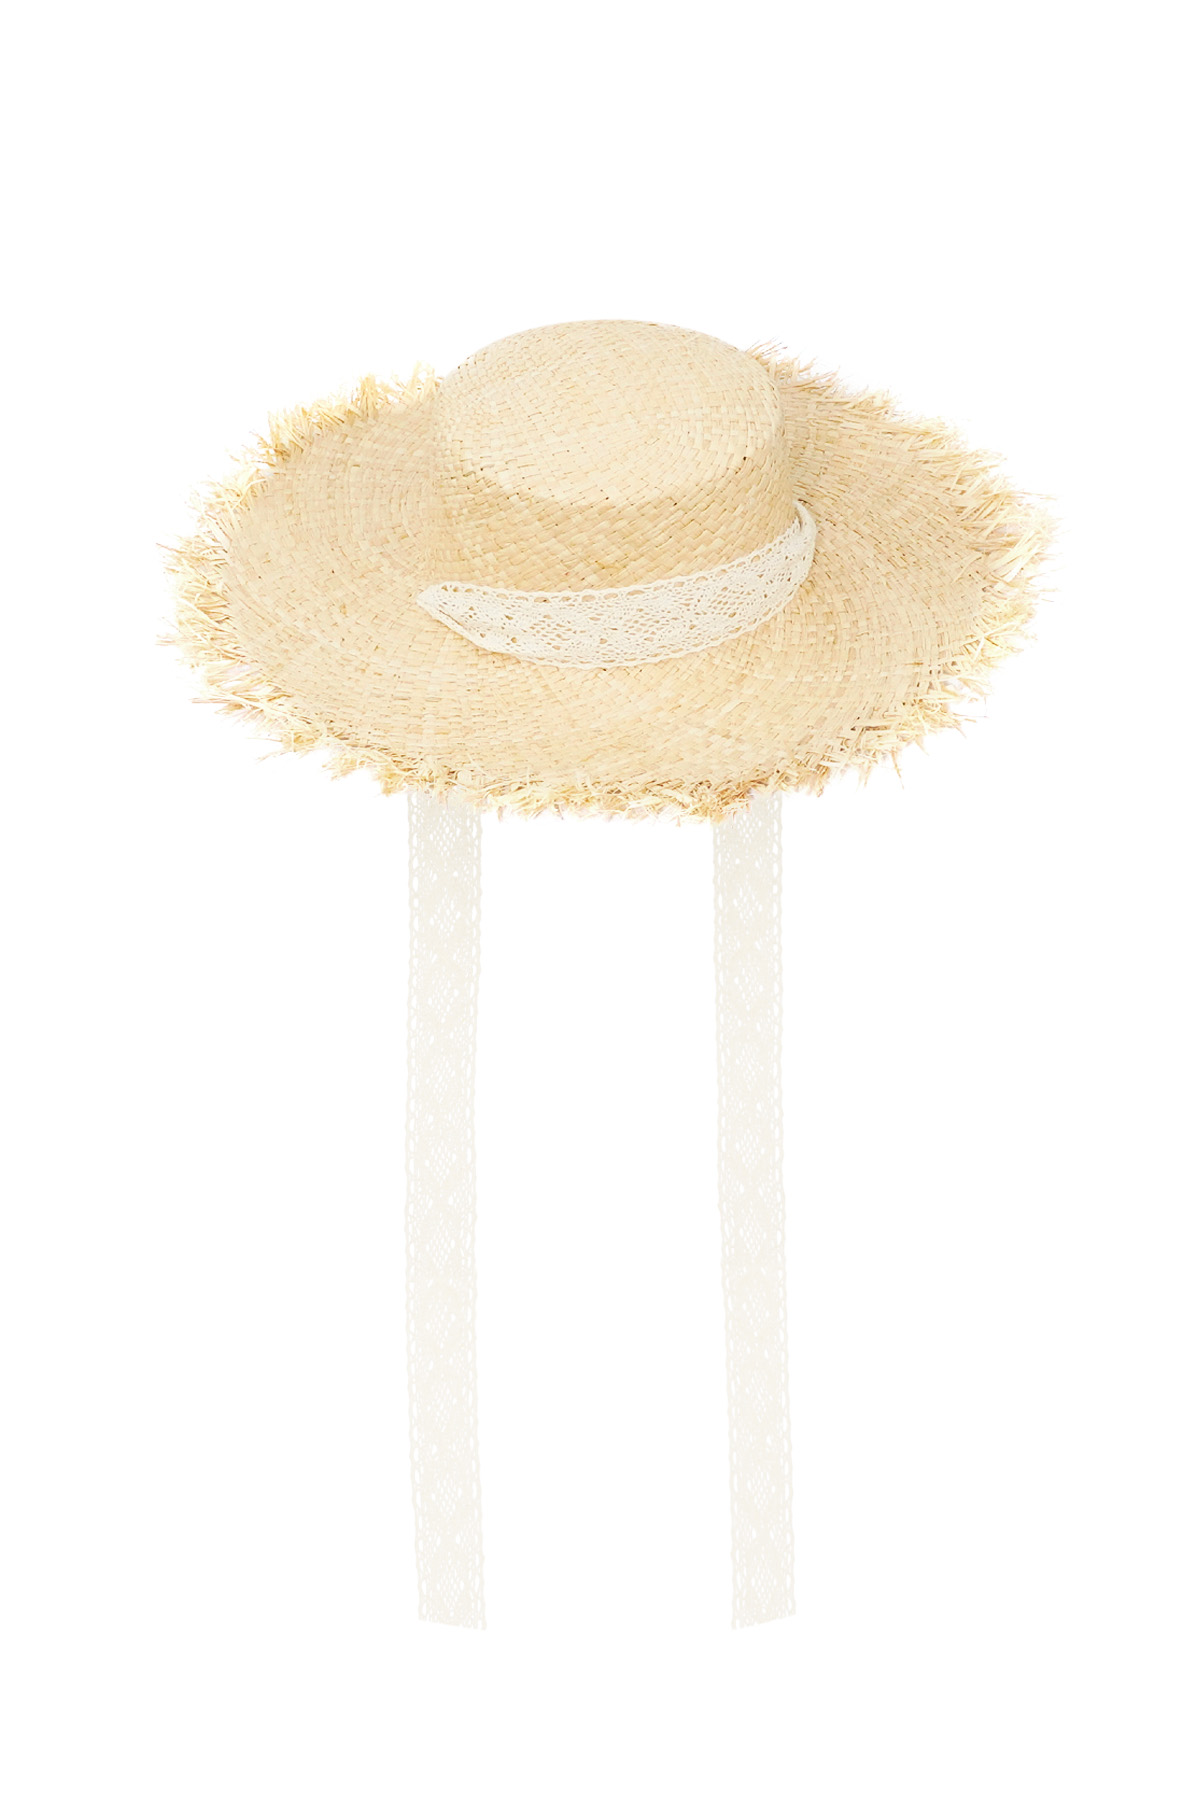 Sombrero estilo playero - blanco roto Imagen6